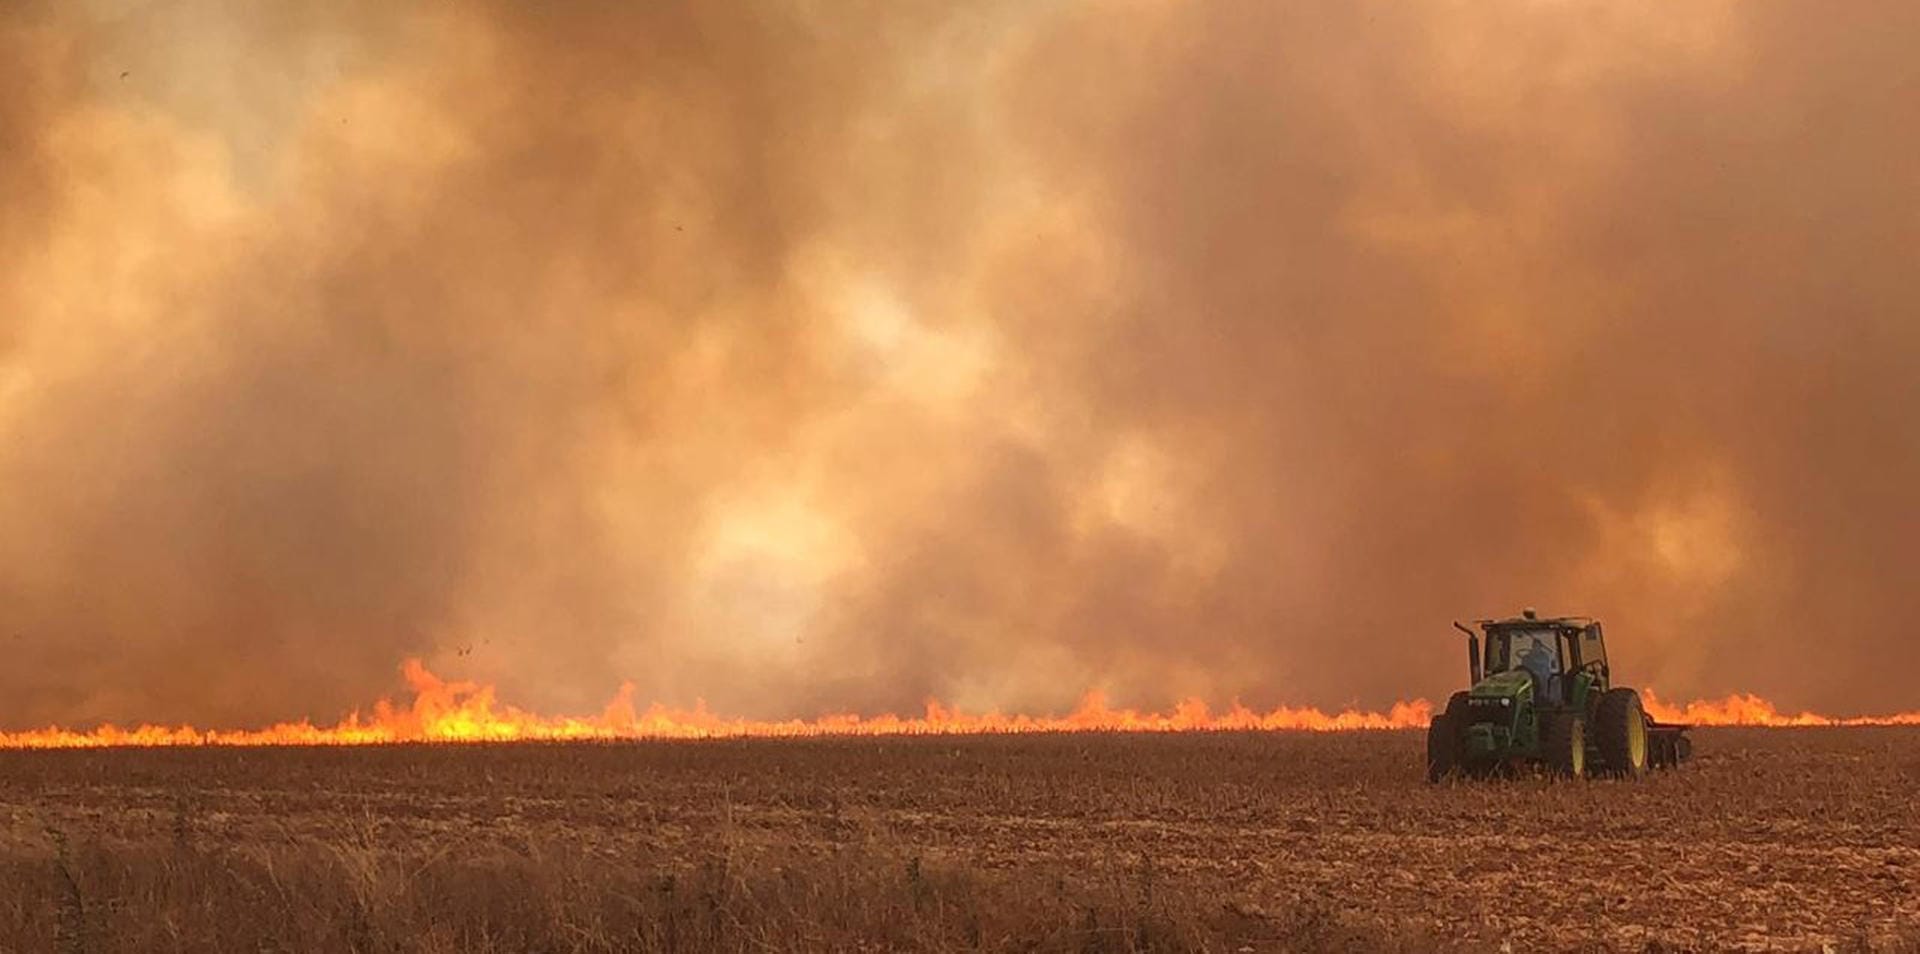 Traktor fährt auf einem brennenden Feld: Anwohner und Bauern müssen aufpassen, dass die Flammen nicht ihr Hab und Gut zerstören.